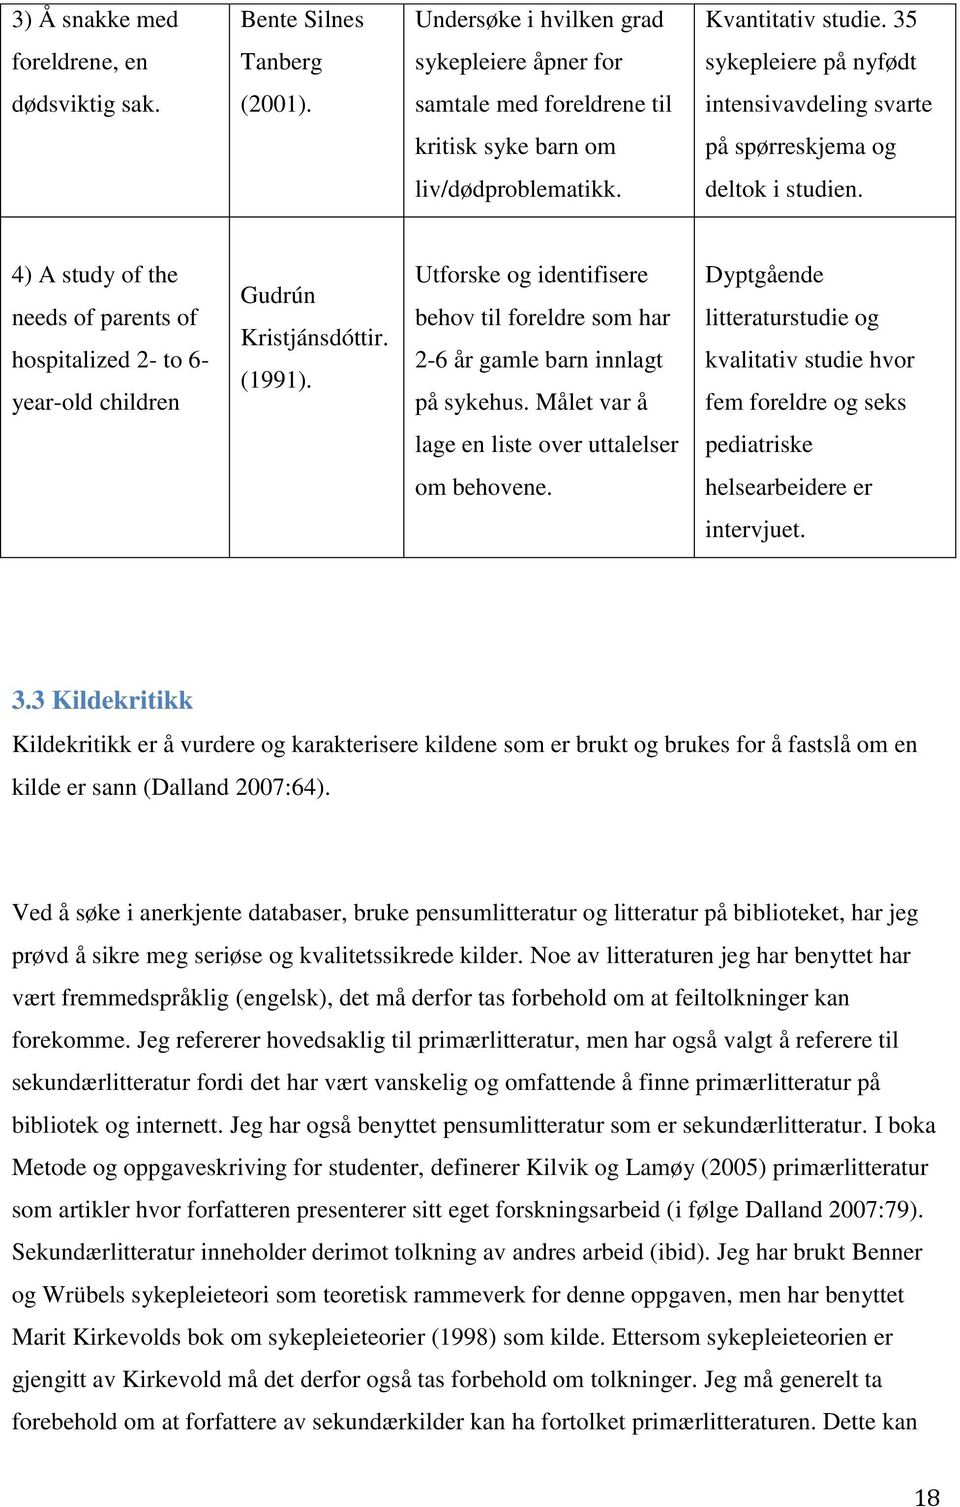 4) A study of the needs of parents of hospitalized 2- to 6- year-old children Gudrún Kristjánsdóttir. (1991). Utforske og identifisere behov til foreldre som har 2-6 år gamle barn innlagt på sykehus.